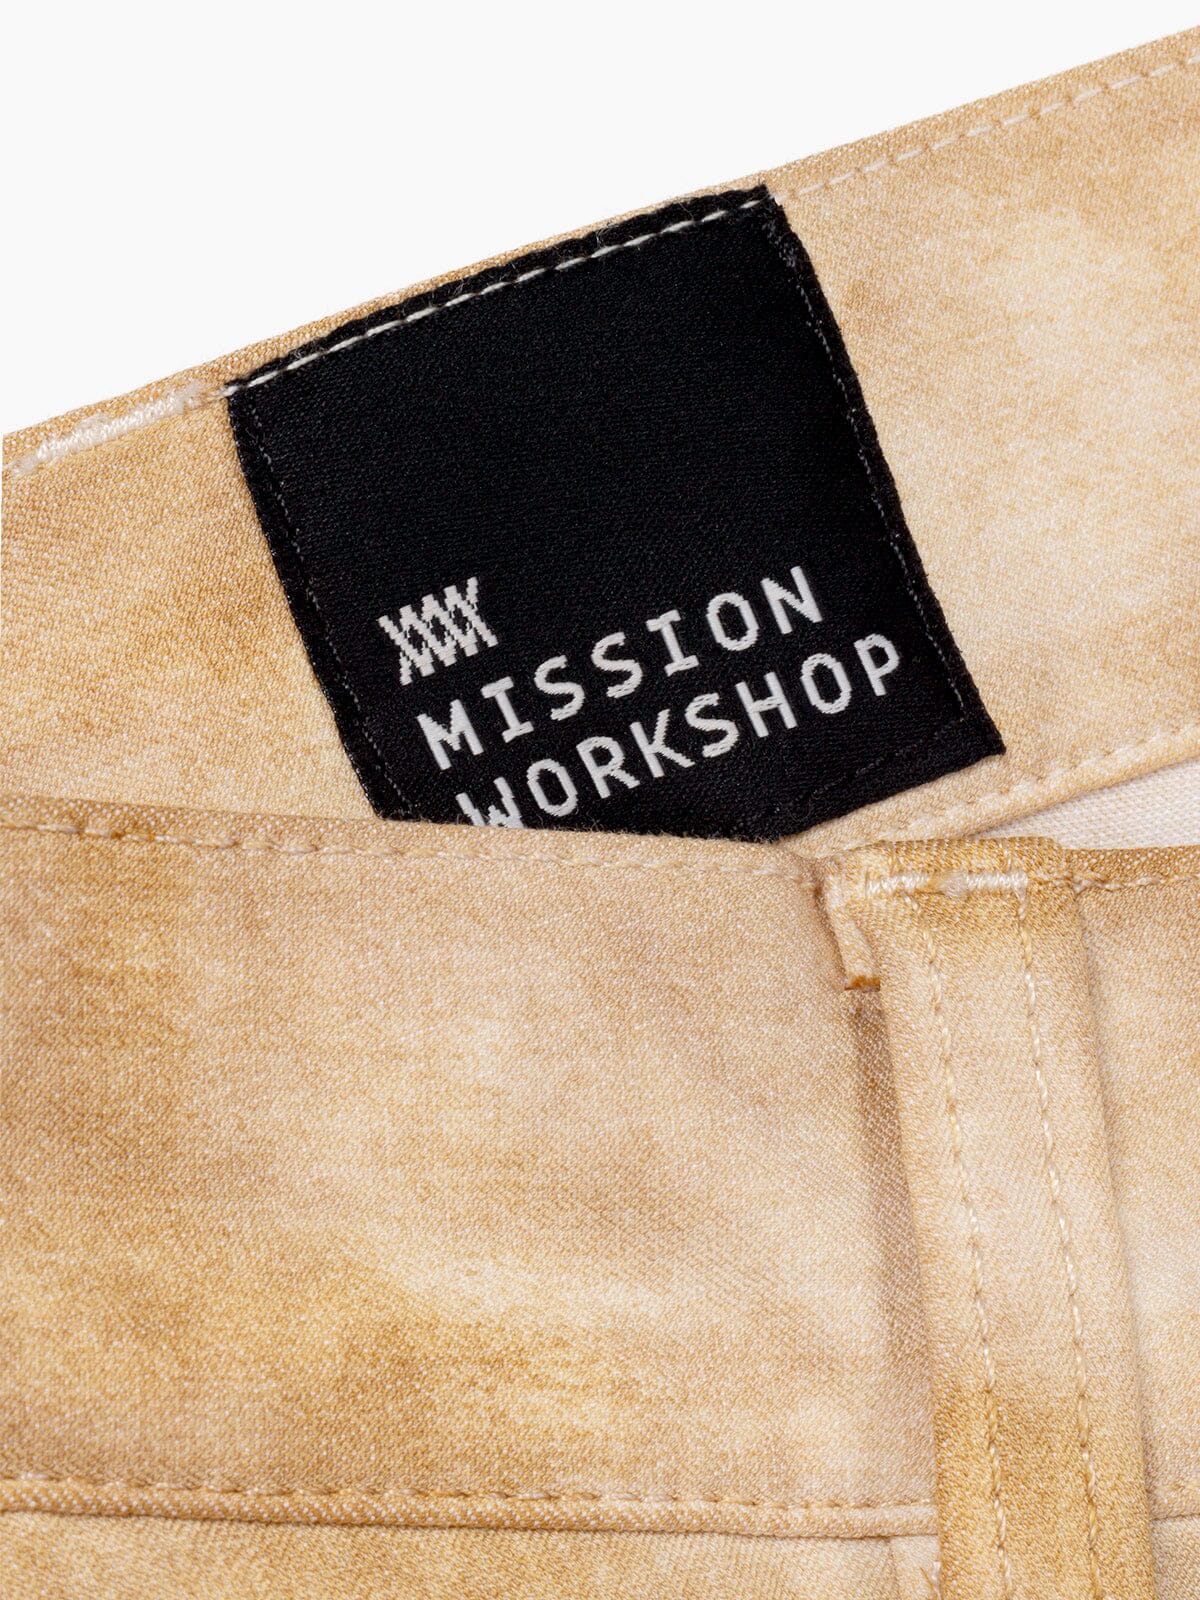 Paragon by Mission Workshop - Väderbeständiga väskor och tekniska kläder - San Francisco & Los Angeles - Byggda för att tåla - Garanterade för alltid